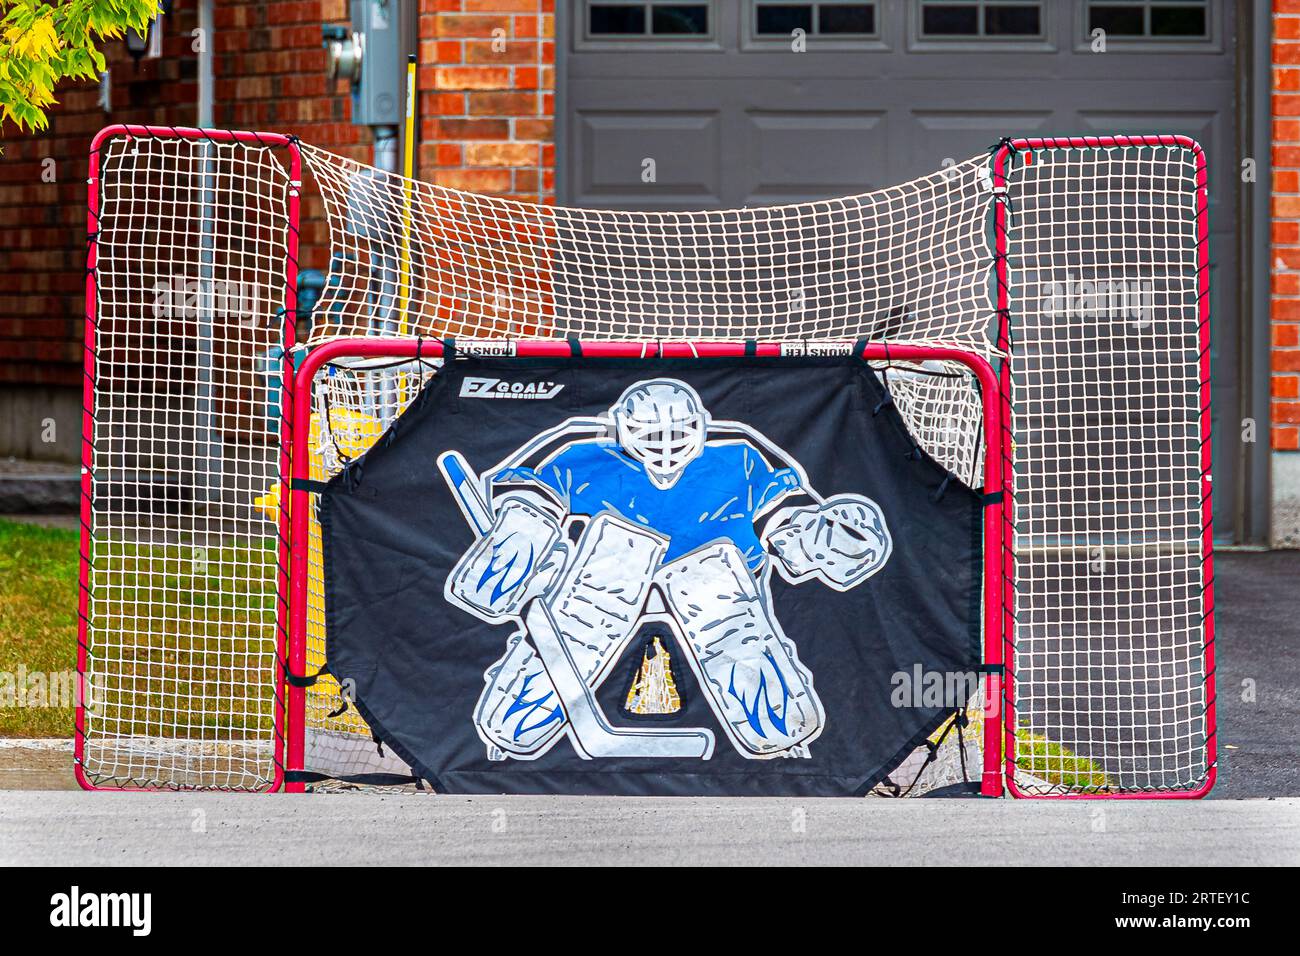 Hockey-Tor. Viele Viertel in kanadischen Städten, ein häufiger Anblick von Hockeyspielen im Hinterhof. Hockey ist hier ein übliches Bild. Kanadischer Sport. Stockfoto